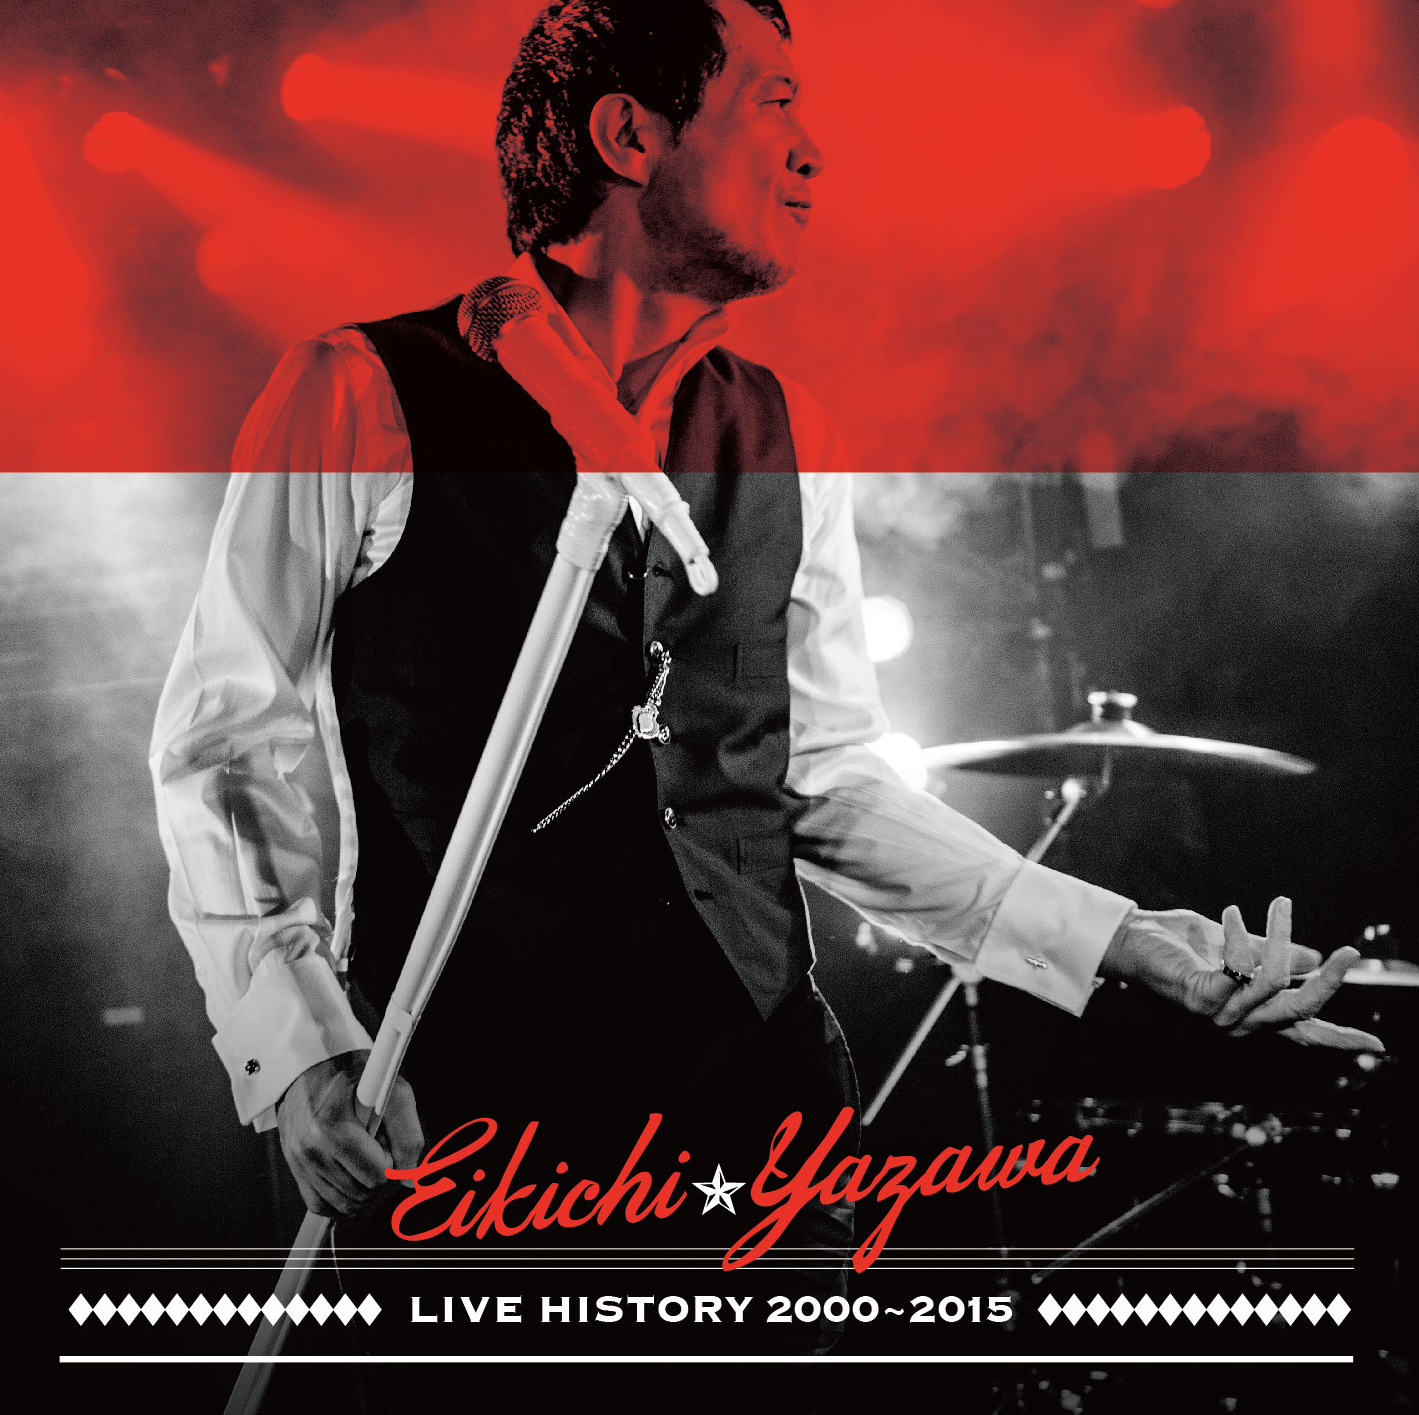 矢沢永吉、「矢沢のわがまま」で2016年発売のライブ音源アルバムを再